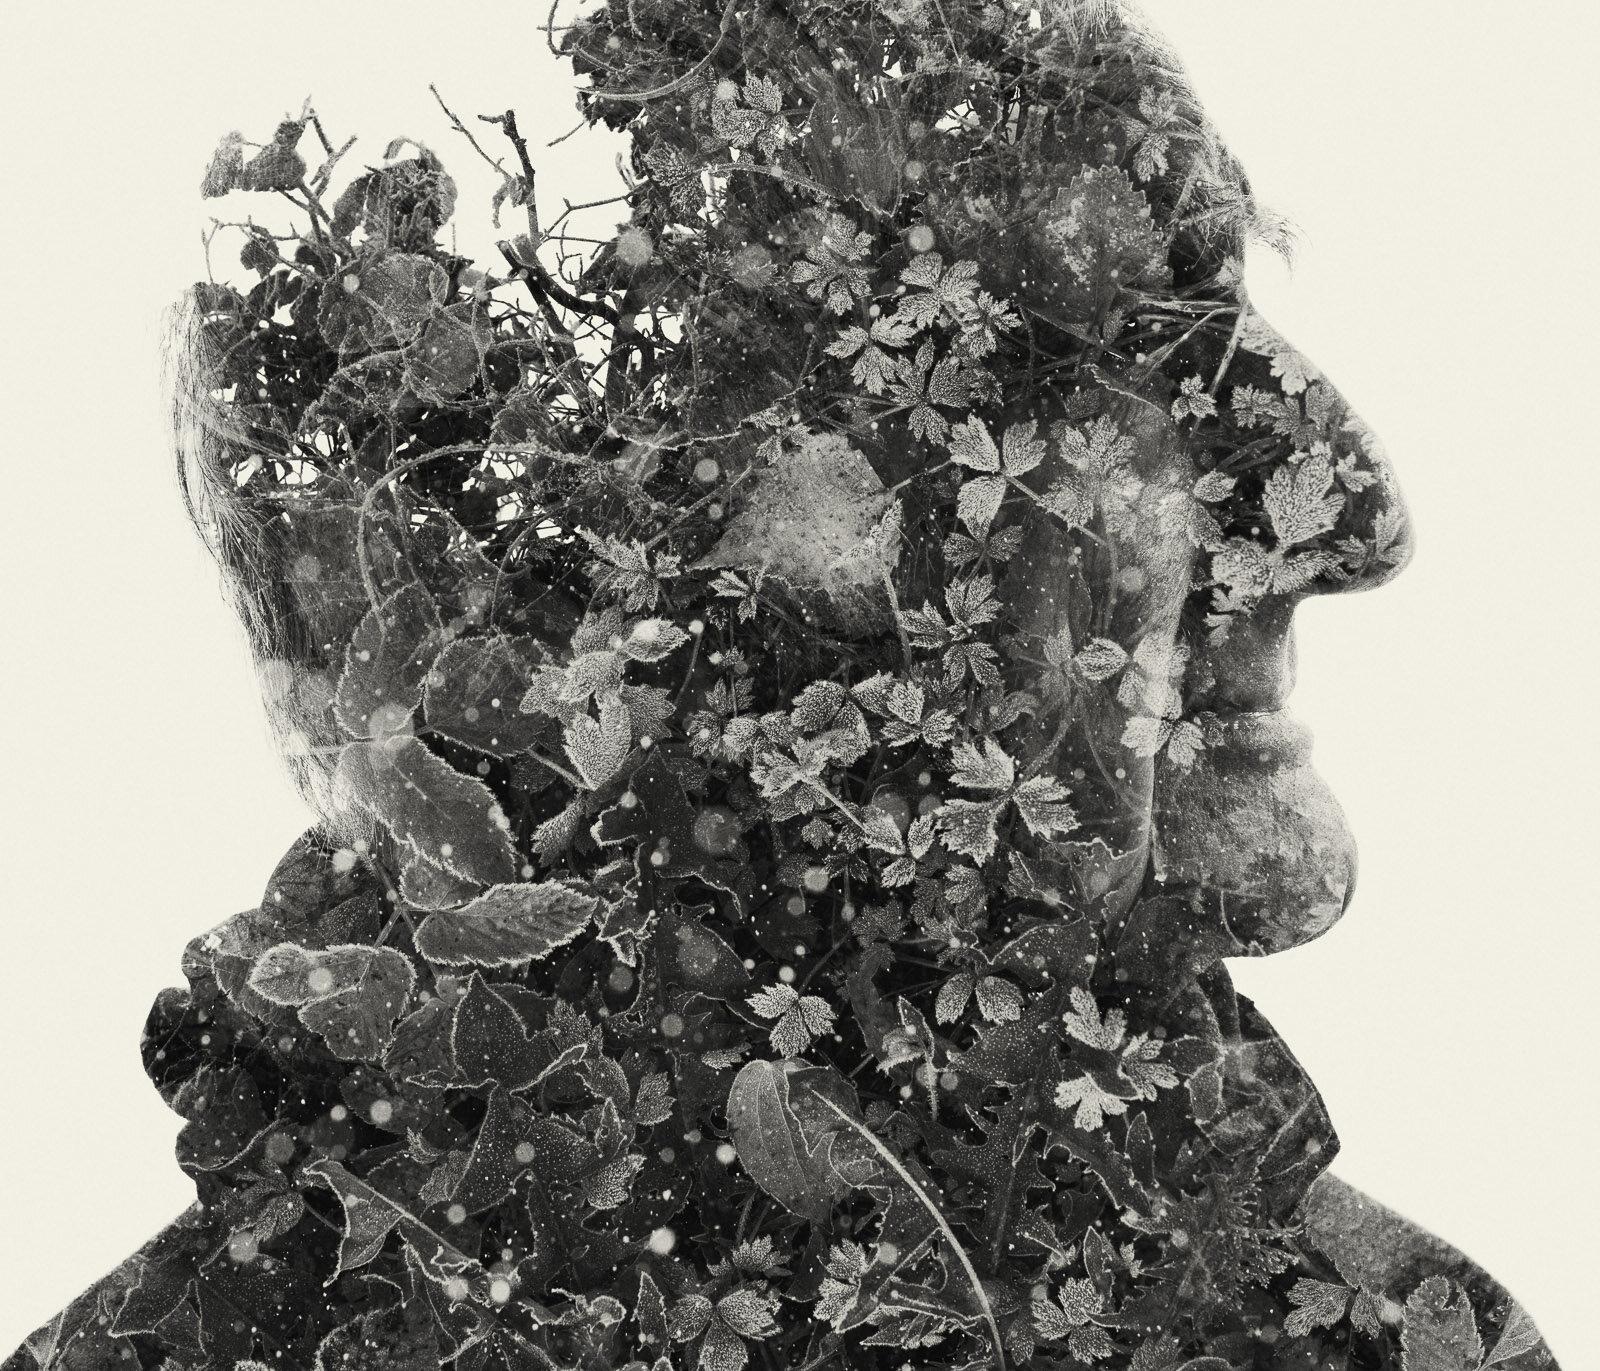 L'ancêtre - portrait en noir et blanc et photographie de nature à plusieurs expositions